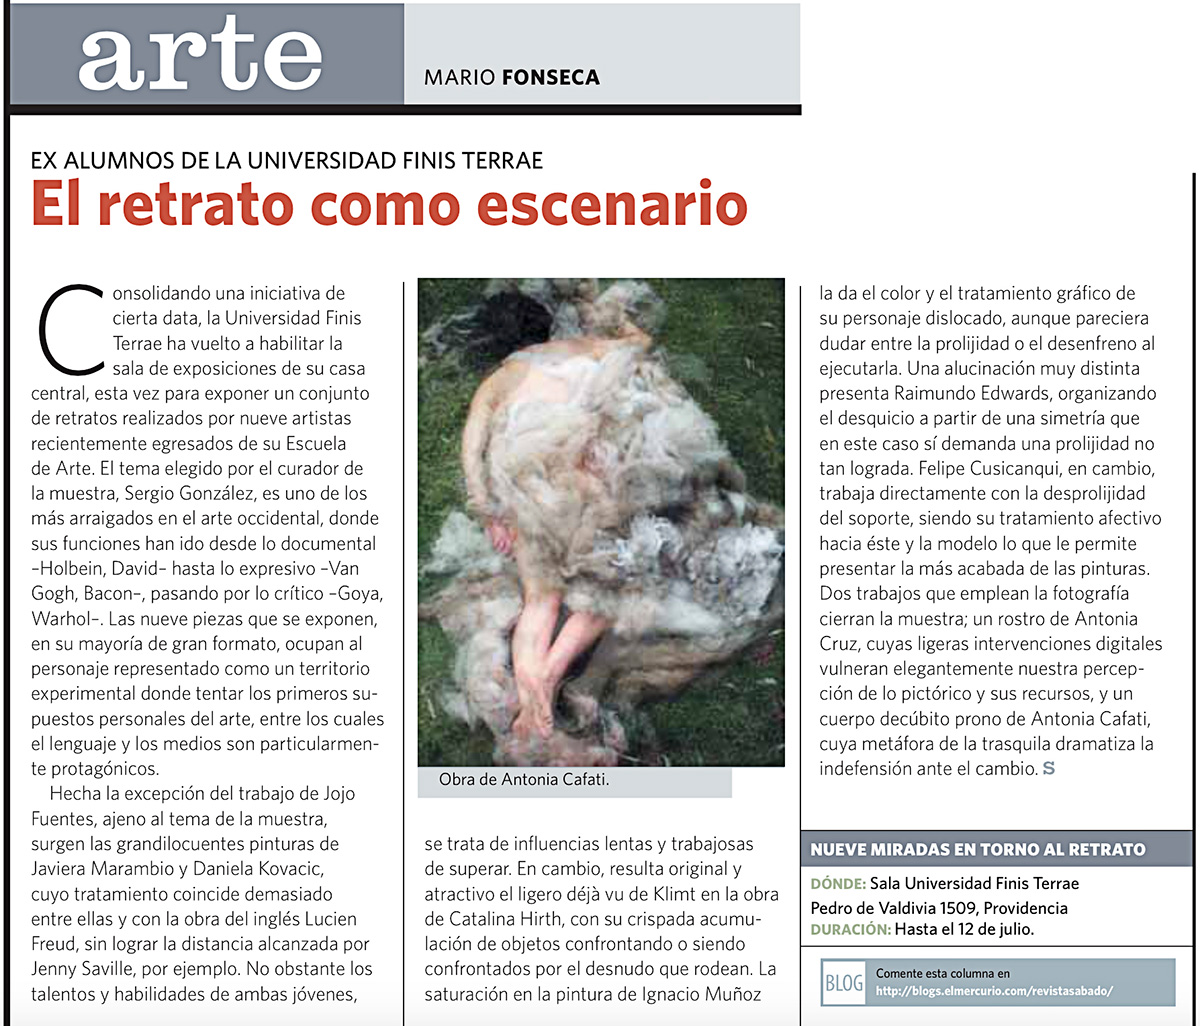 Exposición Trans “9 Miradas entorno al retrato”, El Mercurio, Revista Sabado 